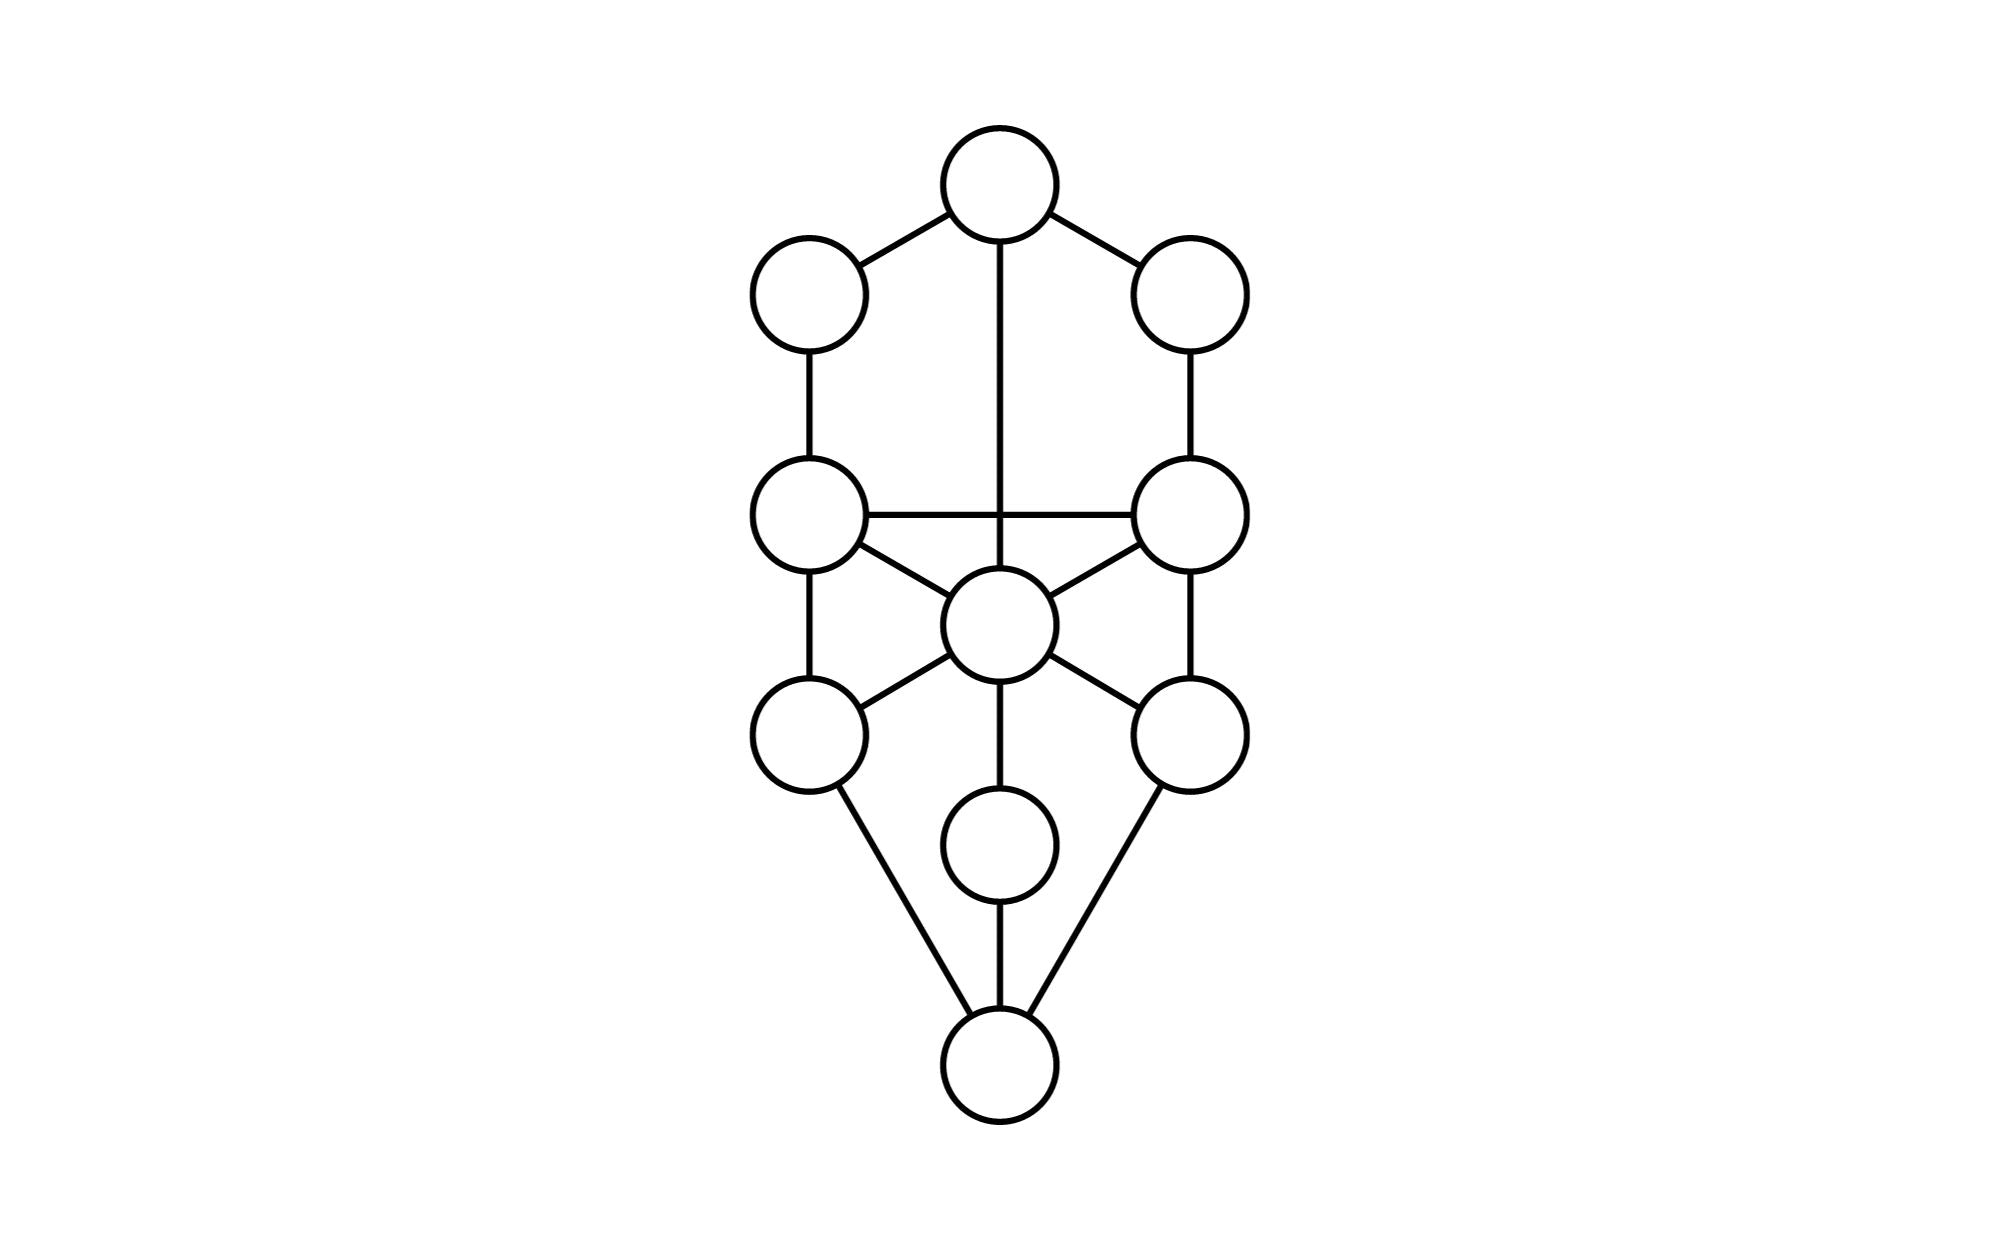 Symbole und Bedeutungen der heiligen Geometrie - Baum des Lebens